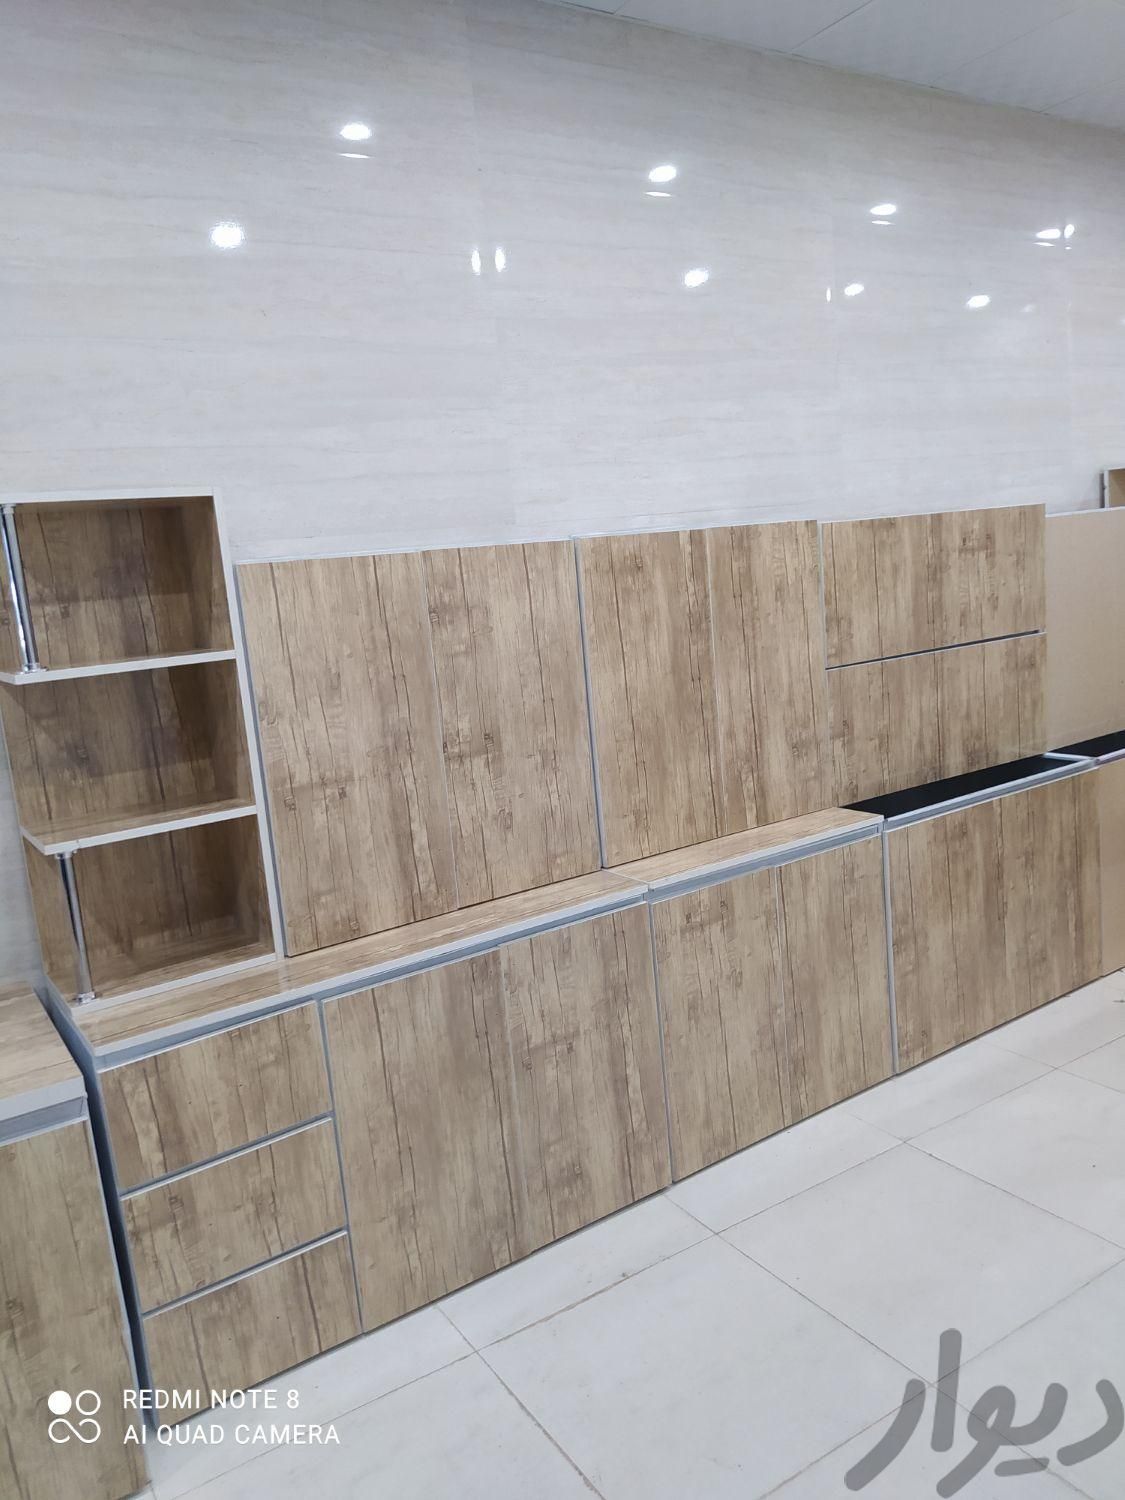 فروش کابینت های پیش ساخته (سرویس سه متری)|مصالح و تجهیزات ساختمان|اهواز, کوی رمضان|دیوار